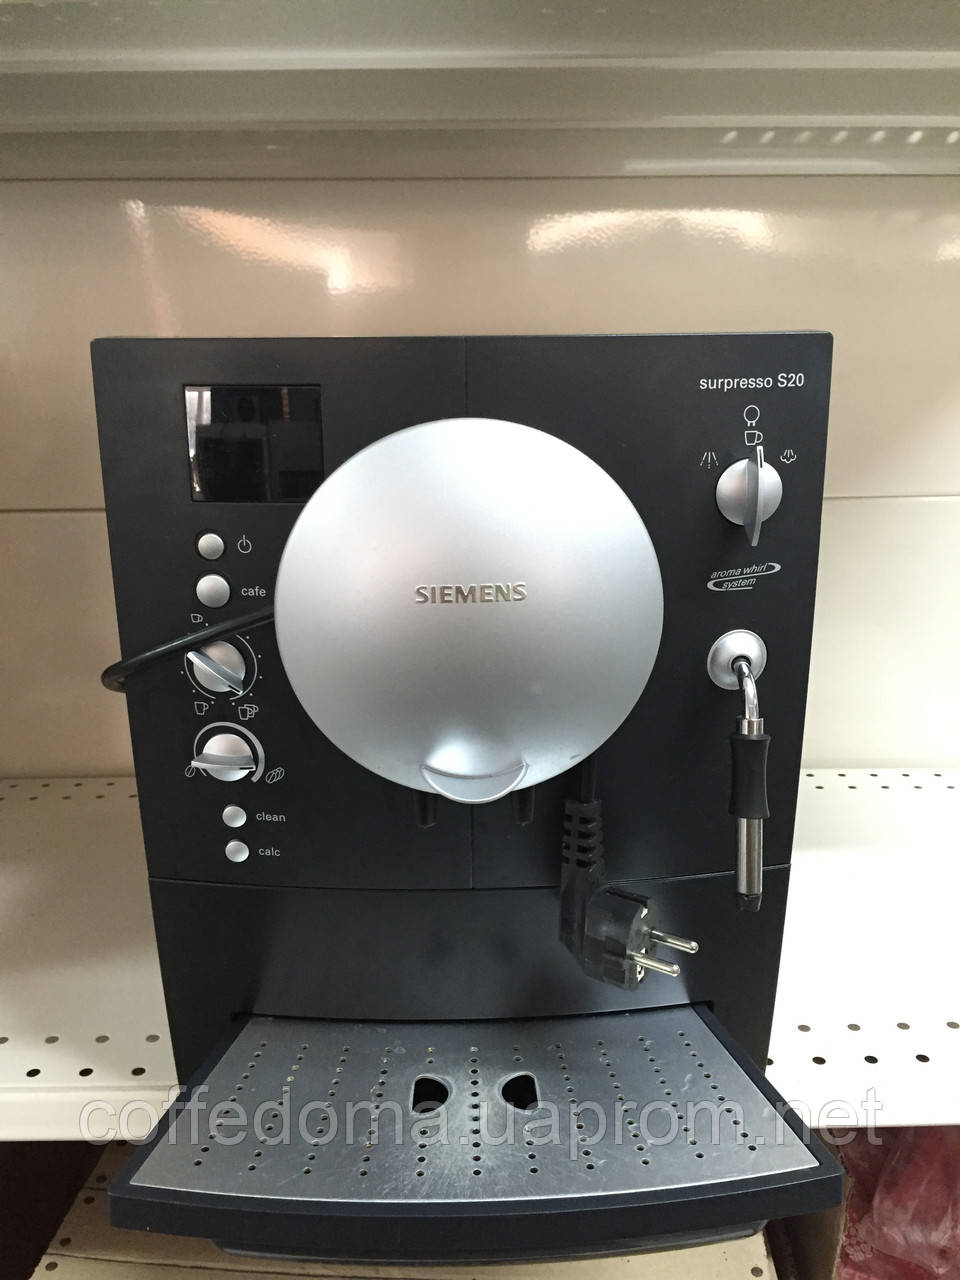 Siemens surpresso s20 ár